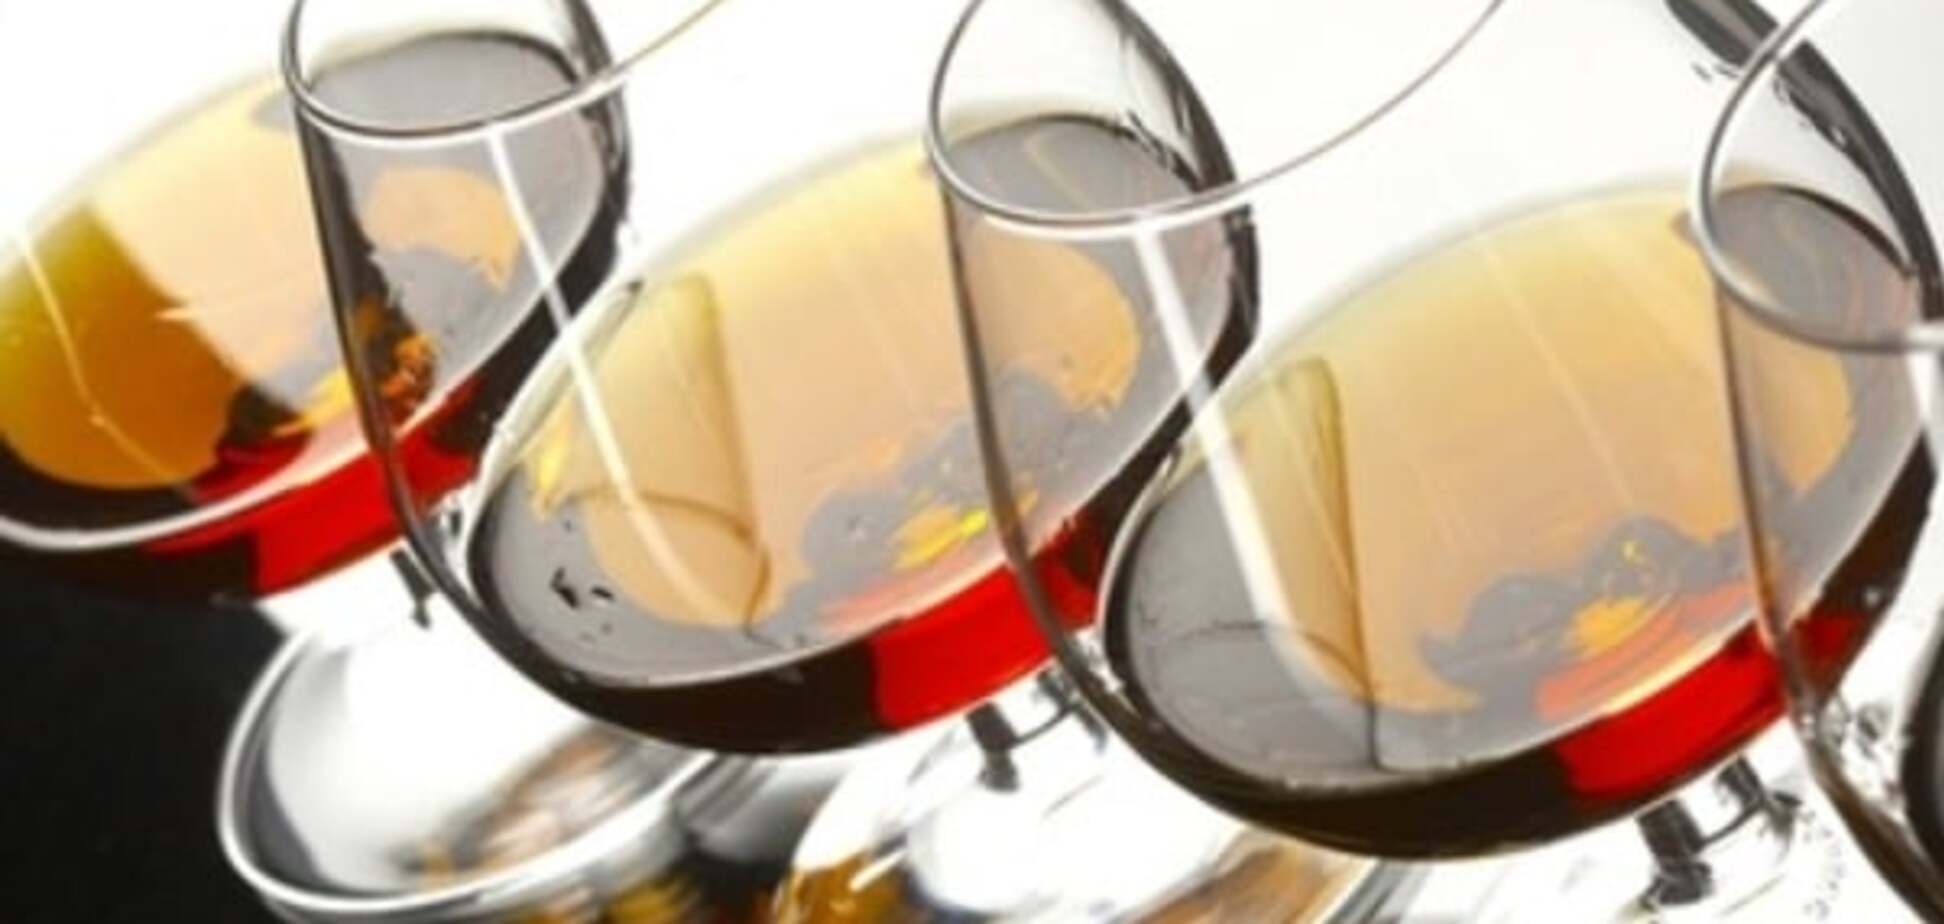 Эксперты раскрыли план увеличения рабочих мест в винодельческих регионах на 167%